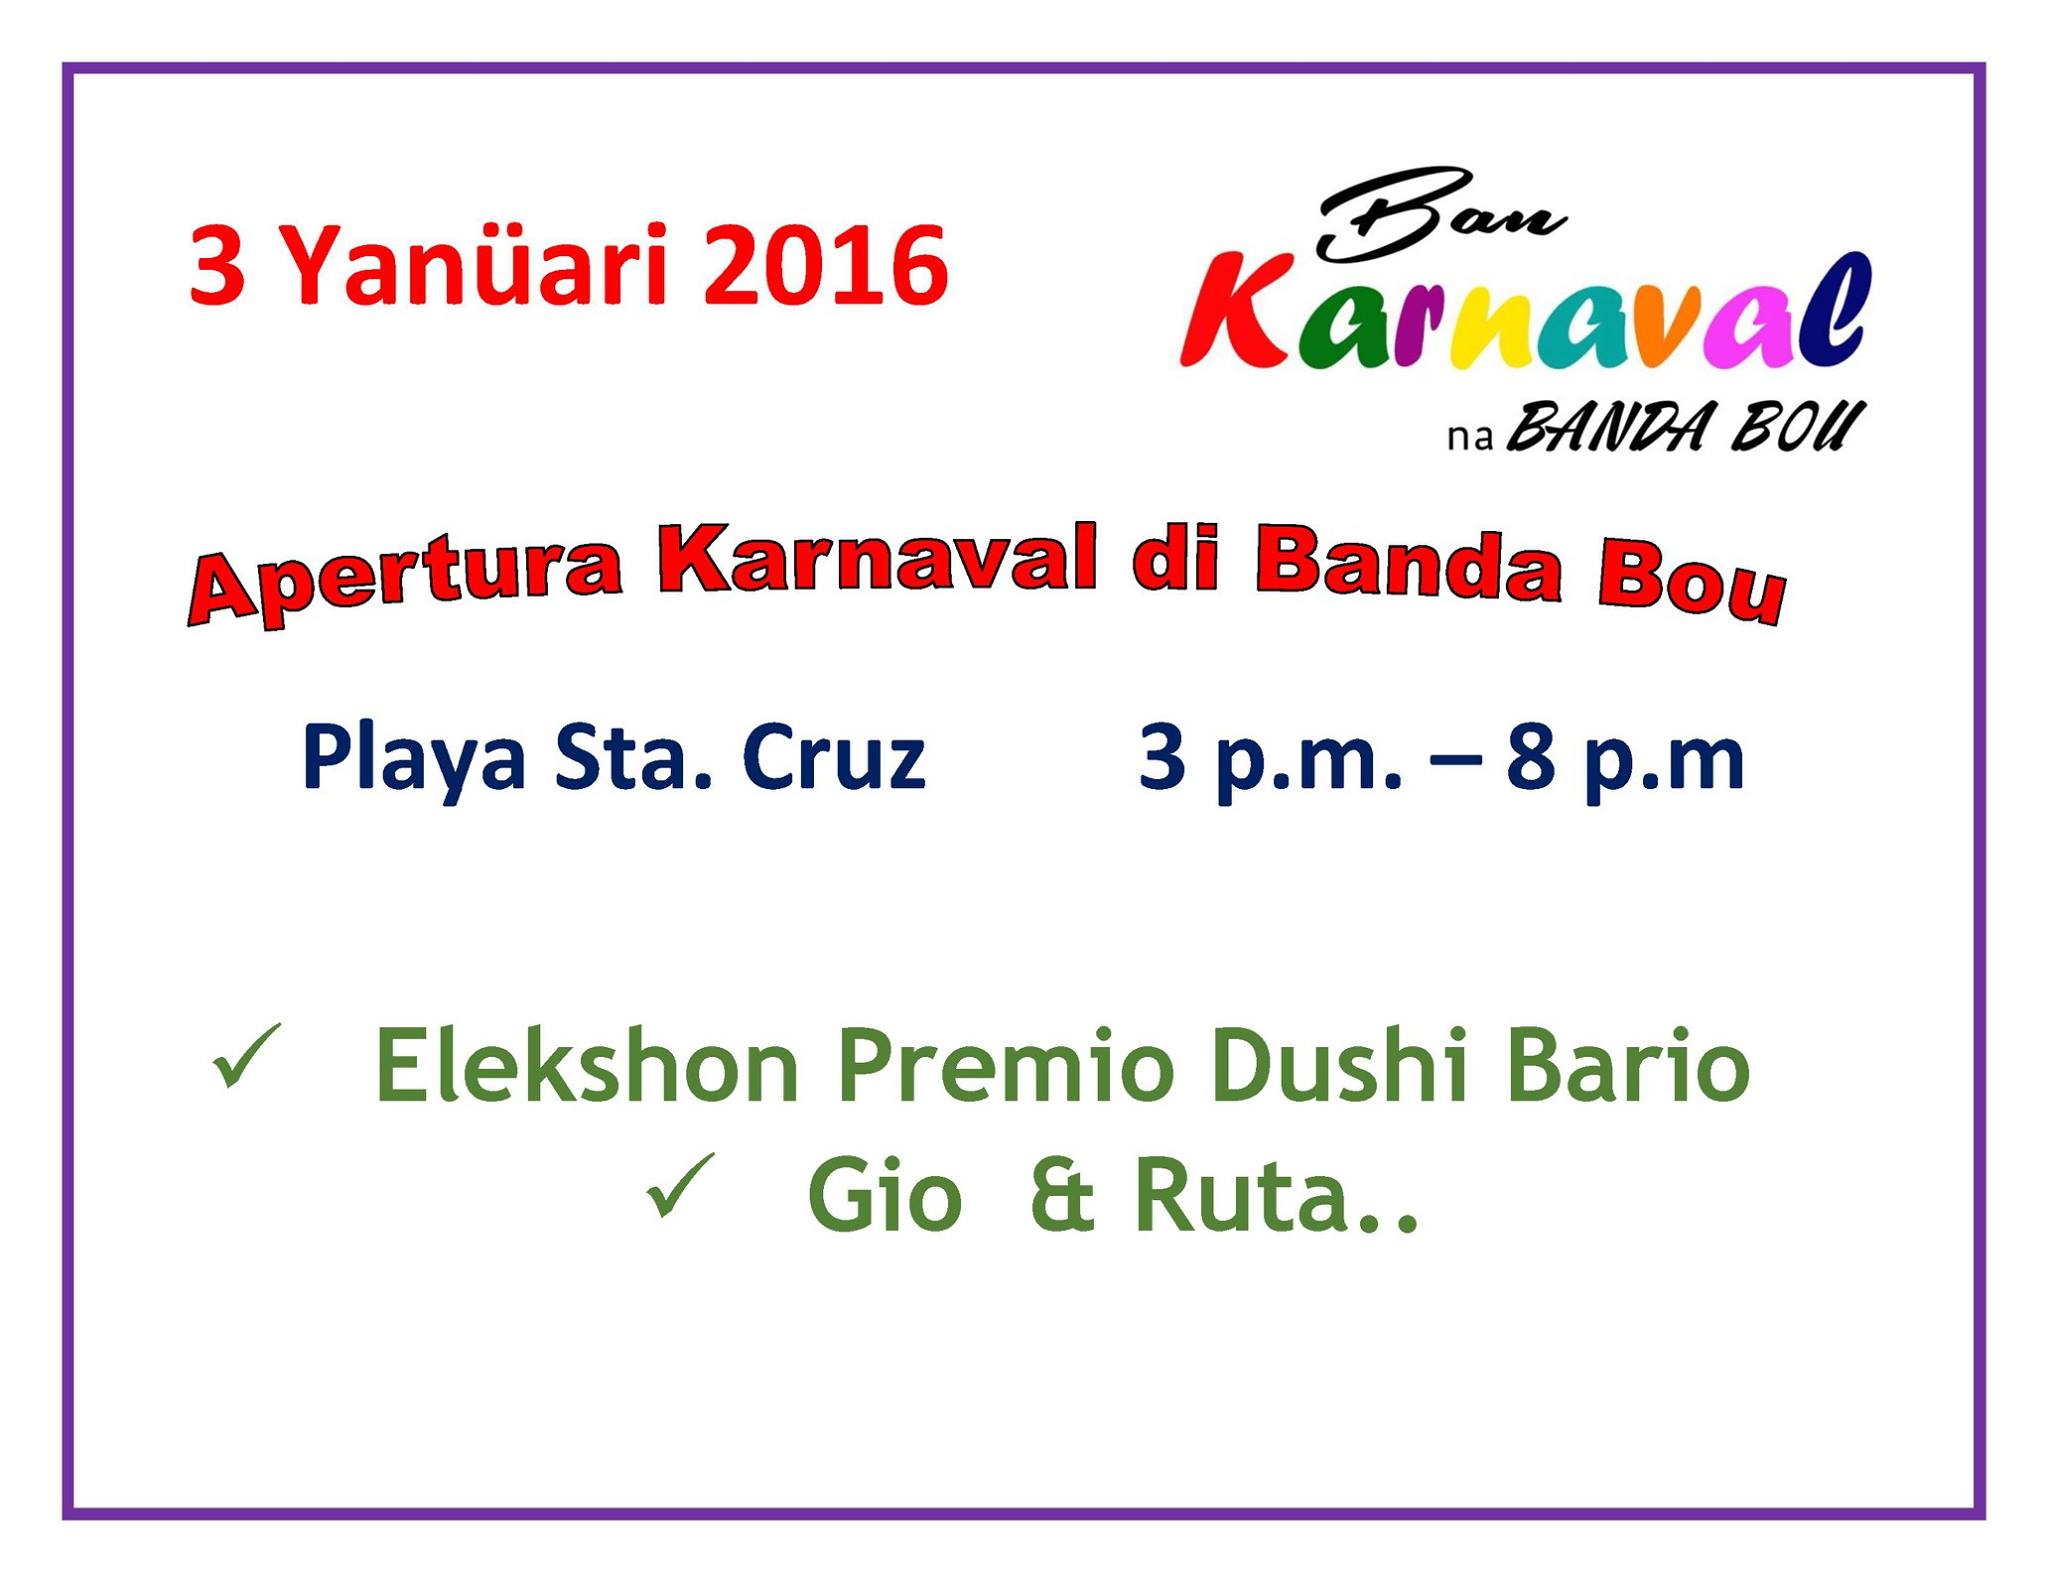 Apertura Karnaval di Banda Bou 2016